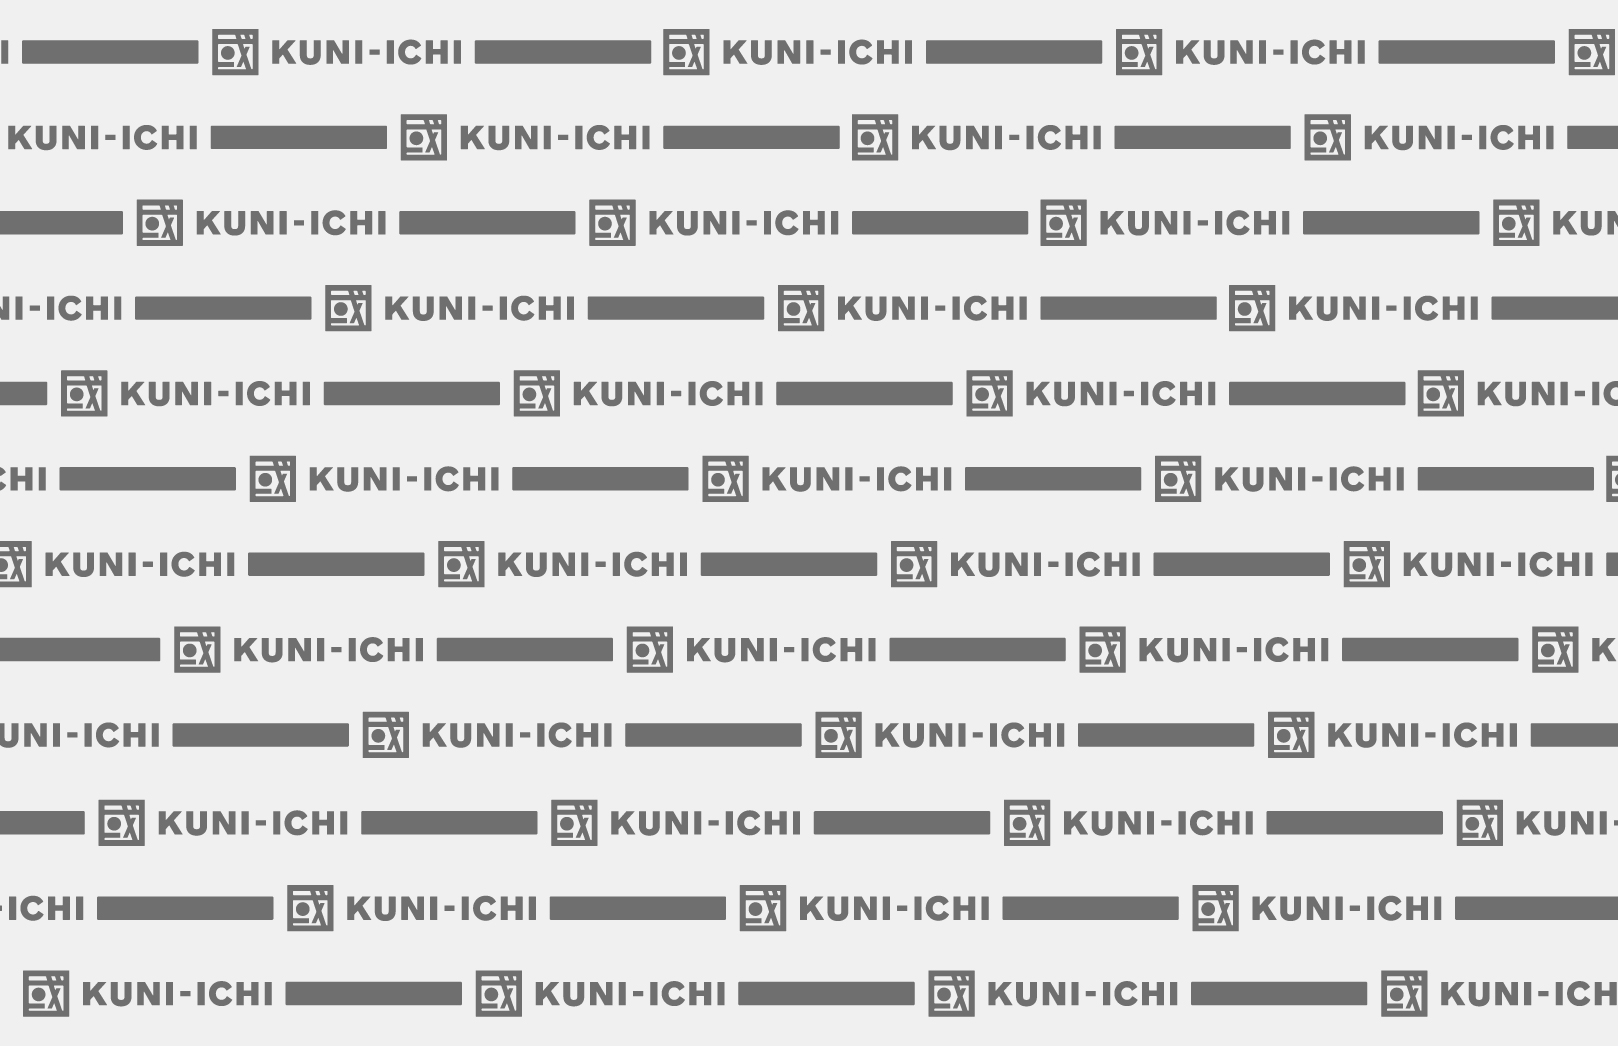 KUNI-ICHI